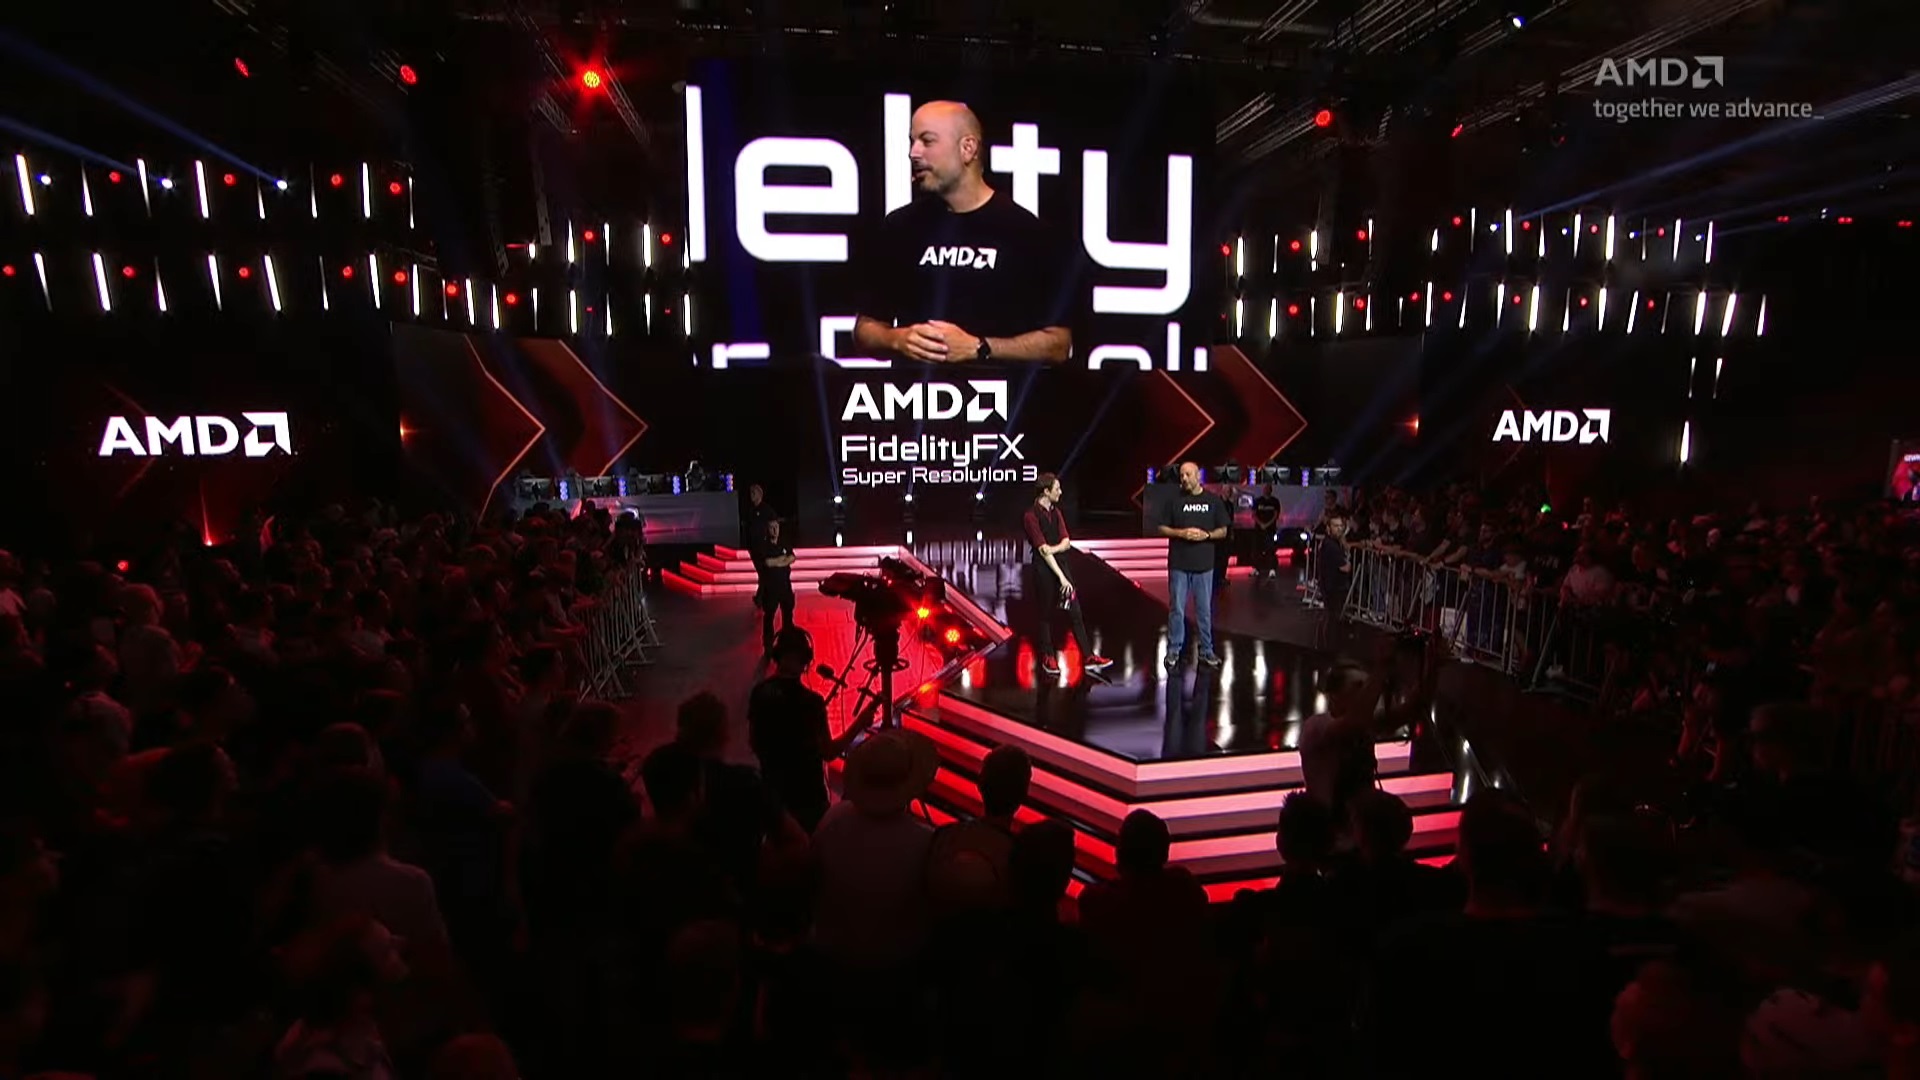 फ्रैंक अज़ोर गेम्सकॉम में एएमडी का एफएसआर 3 प्रस्तुत कर रहे हैं।